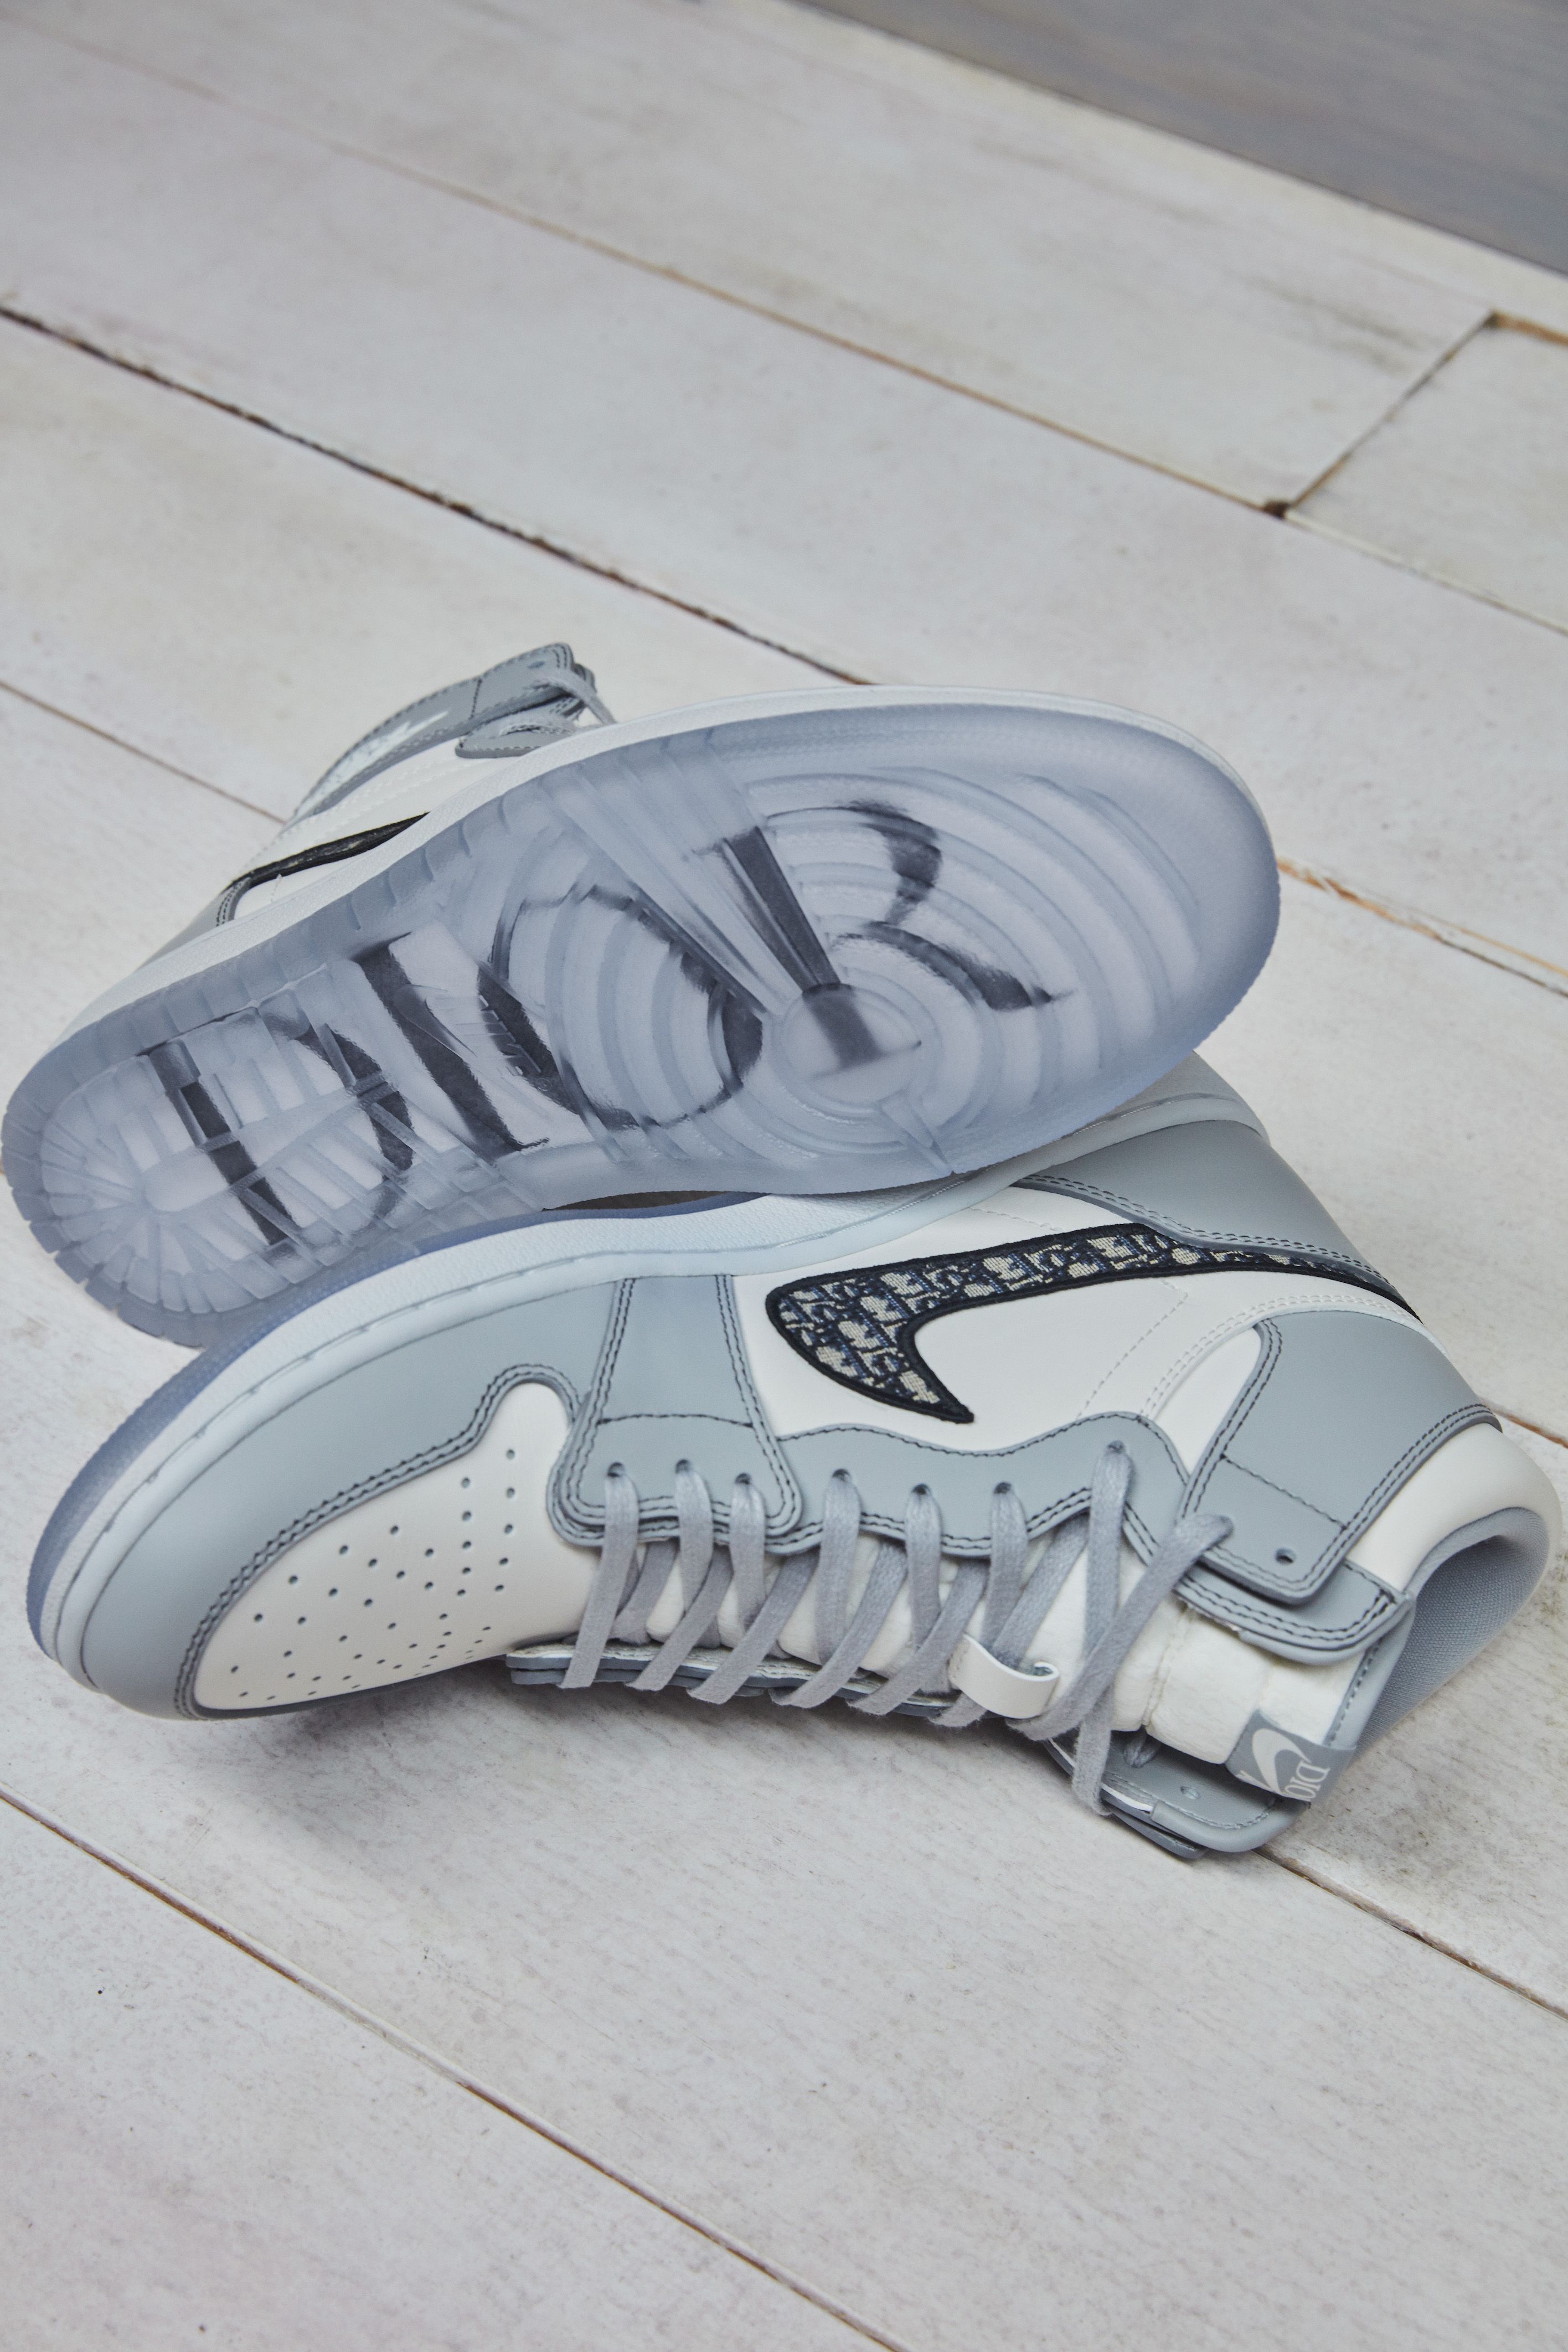 Dónde comprar las zapatillas Air Dior Jordan 1 de Nike x Dior سعر ببغاء مكاو